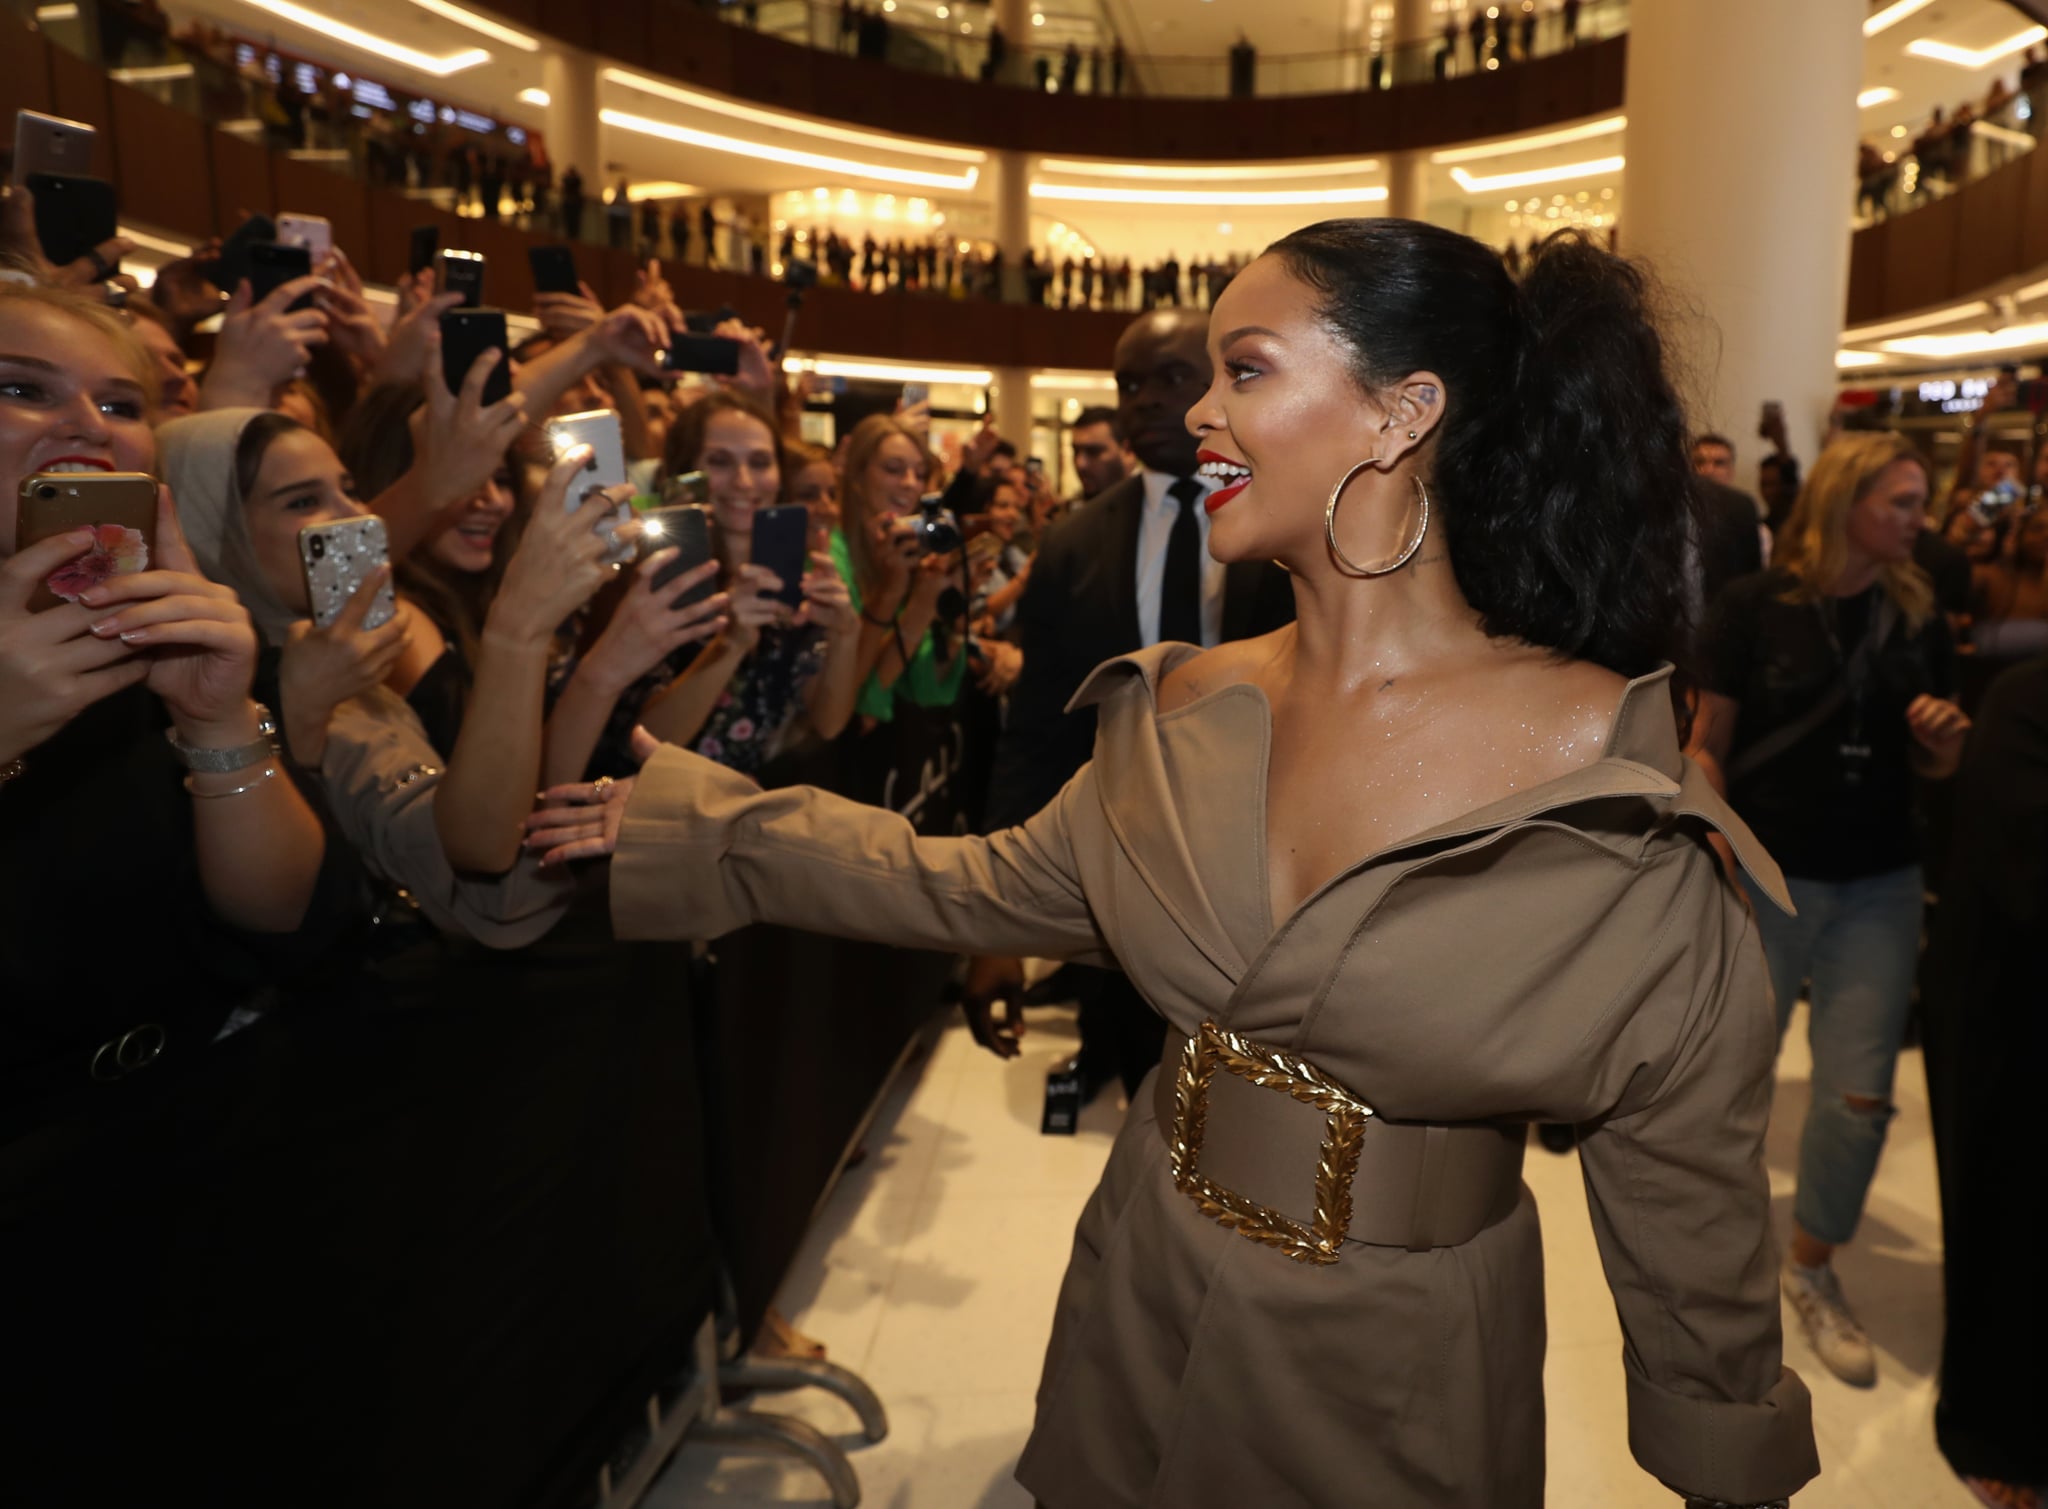 Rihanna at Fenty Beauty event in Dubai wearing an Oscar de la Renta coat  dress.